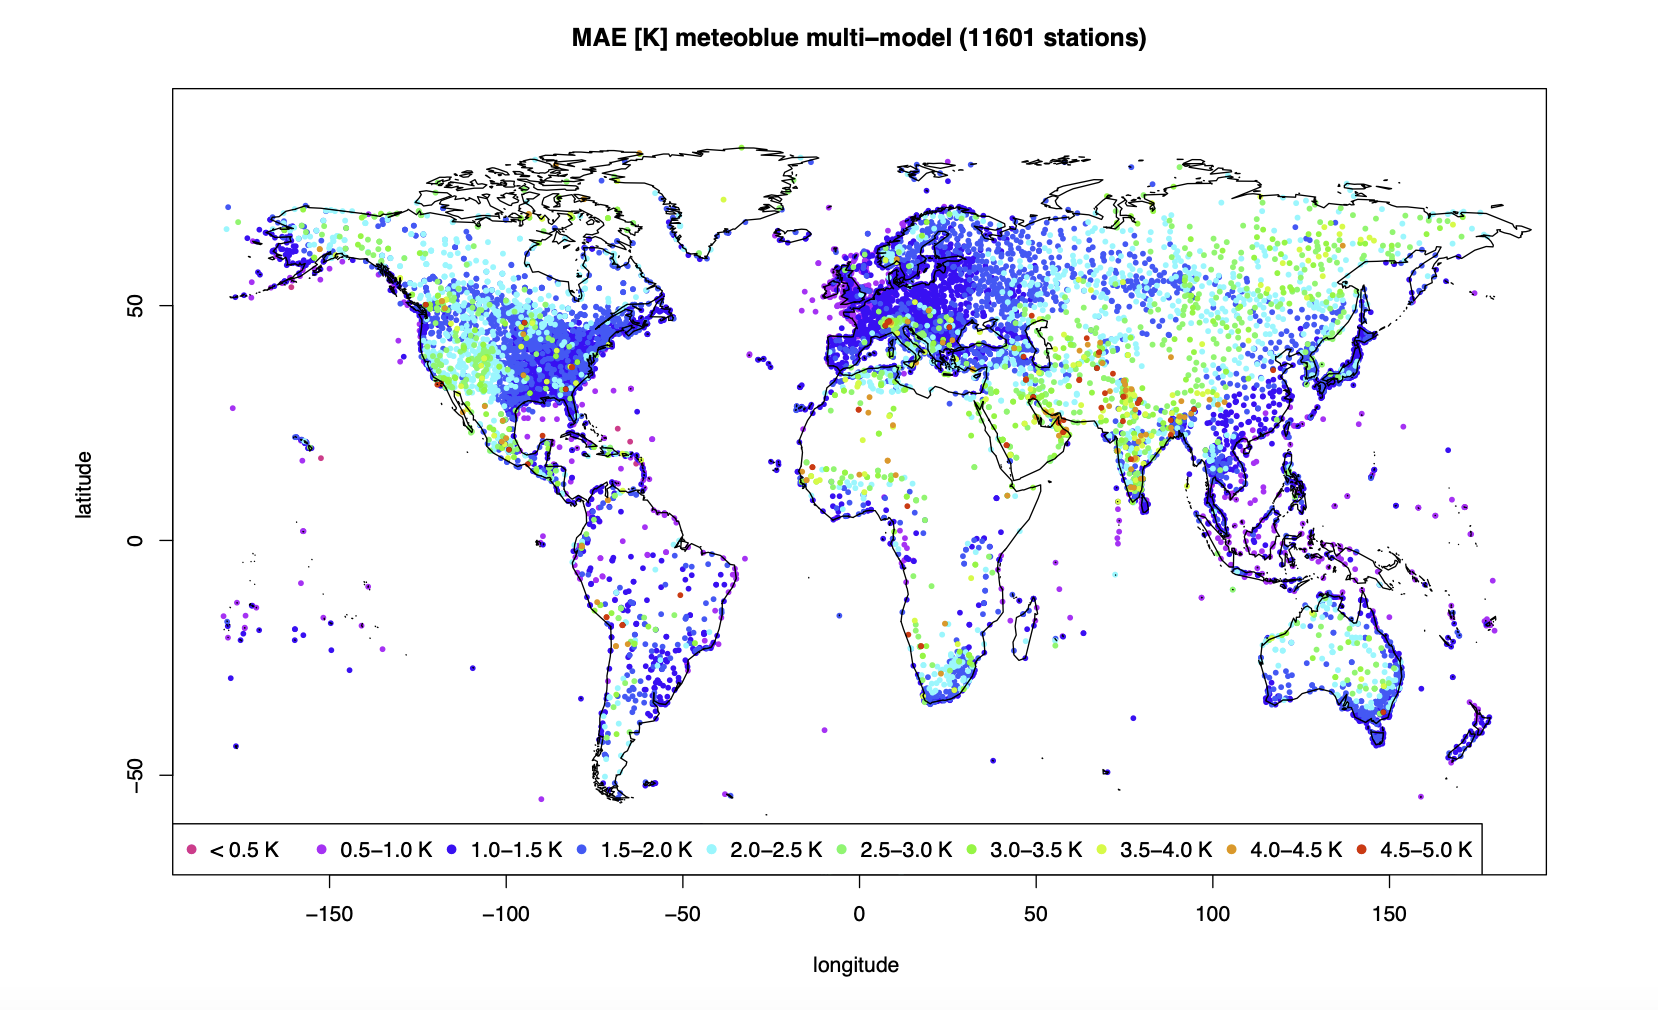 MAE [K] do MultiModel de meteoblue usado na previsão operacional, verificado com mais de 10'000 medições em todo o mundo do ano de 2018.